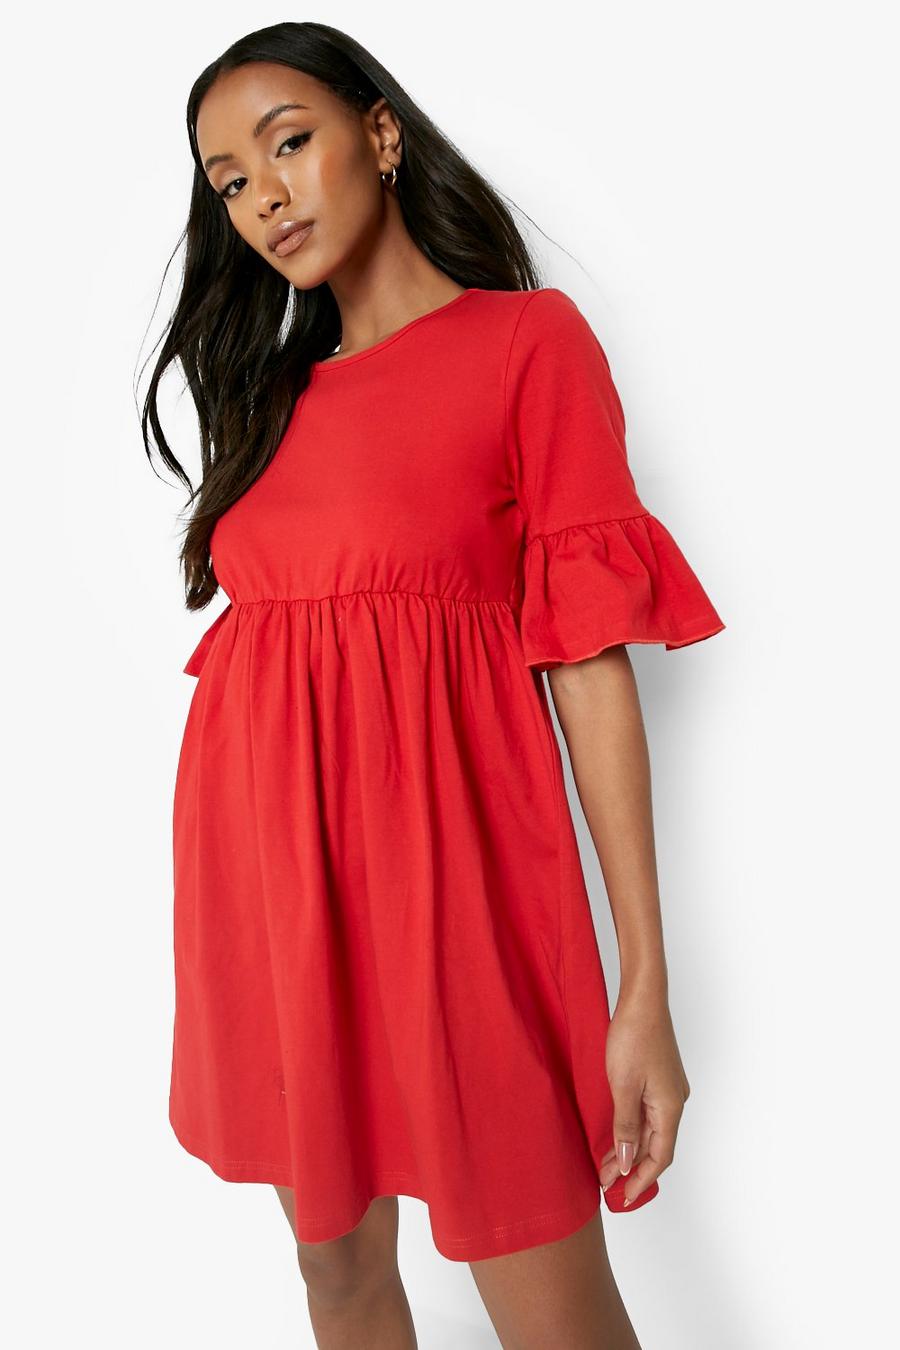 Petite Smok-Kleid mit Rüschenärmeln, Red rot